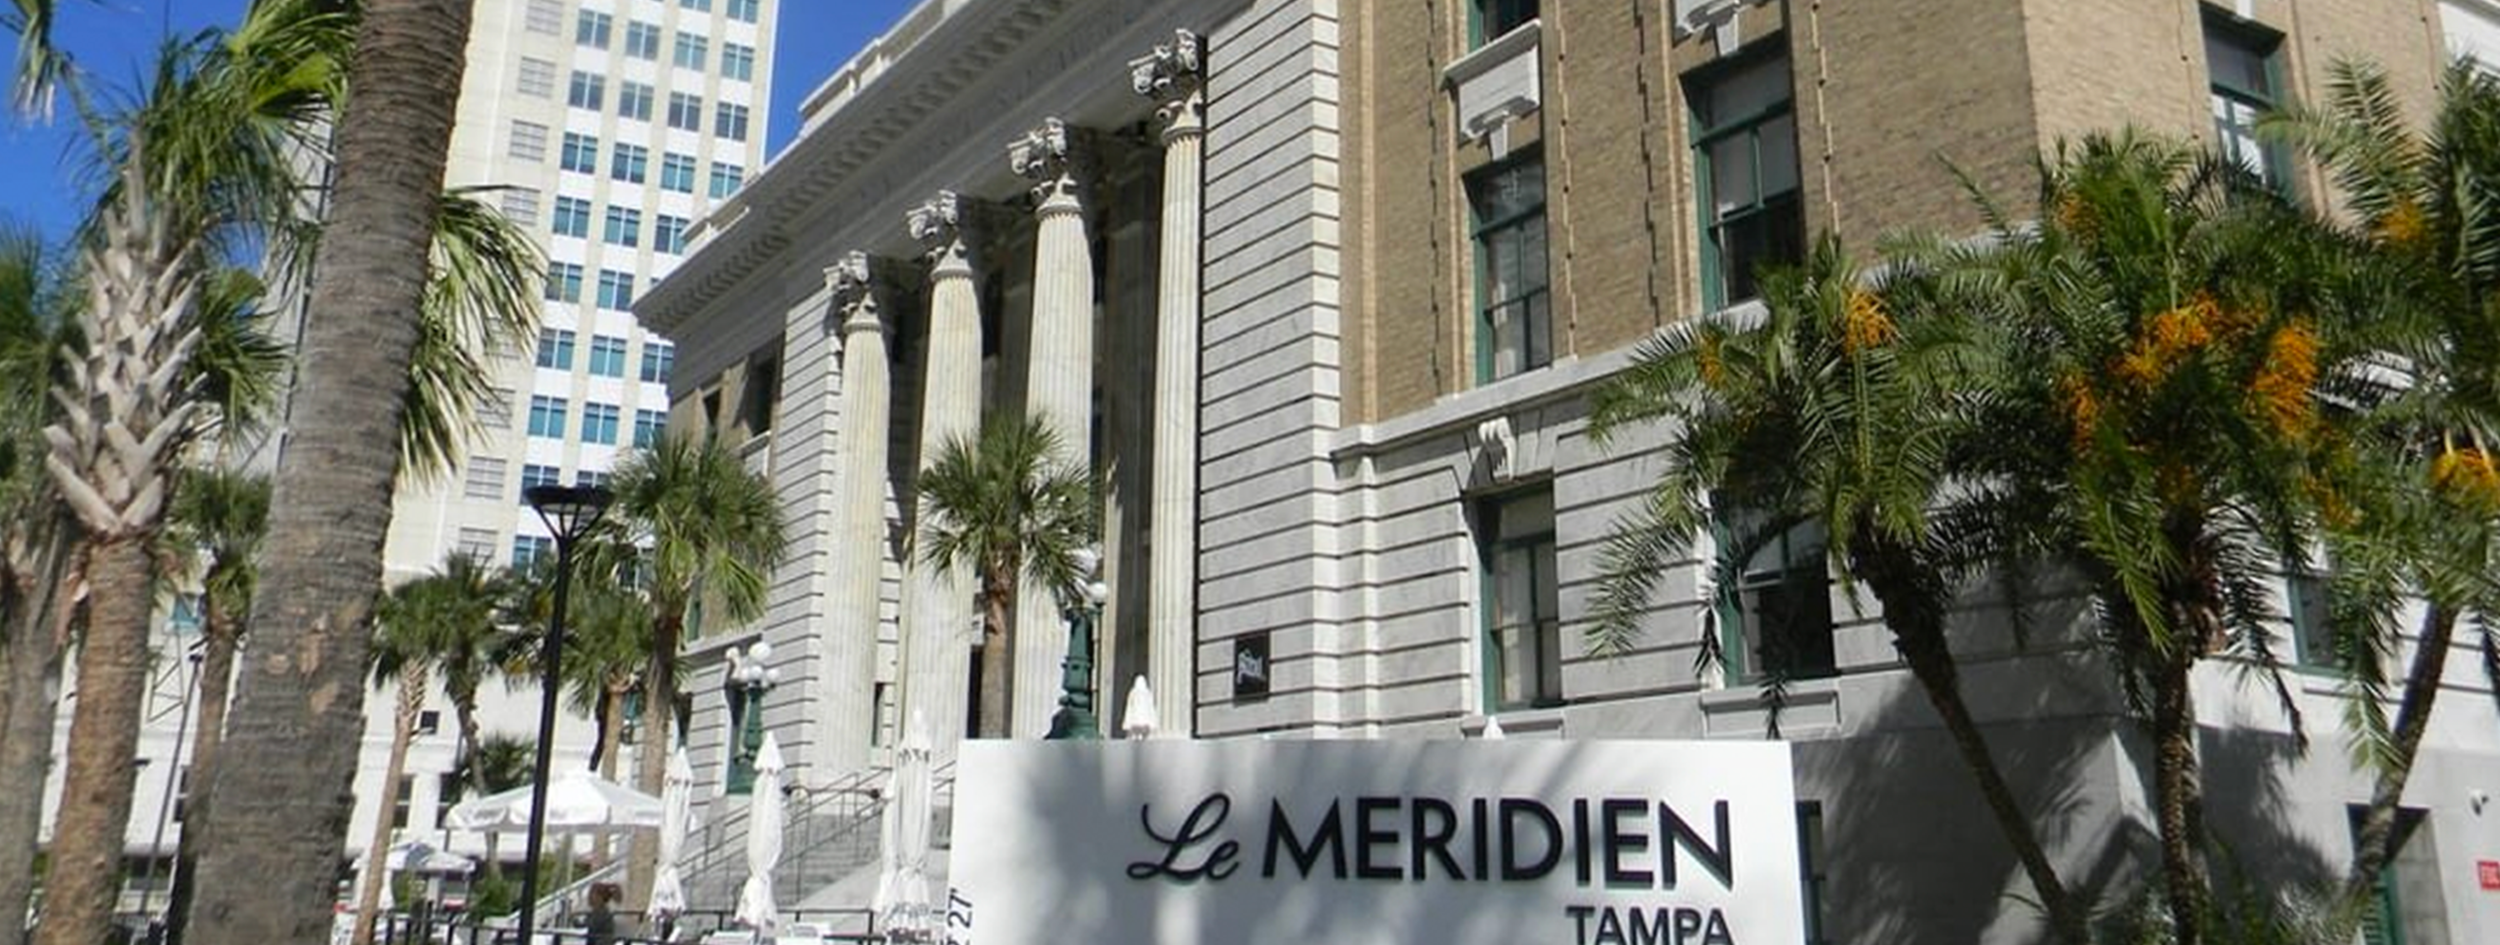 Hotel Le Meridien (Palacio de Justicia Federal de Tampa)